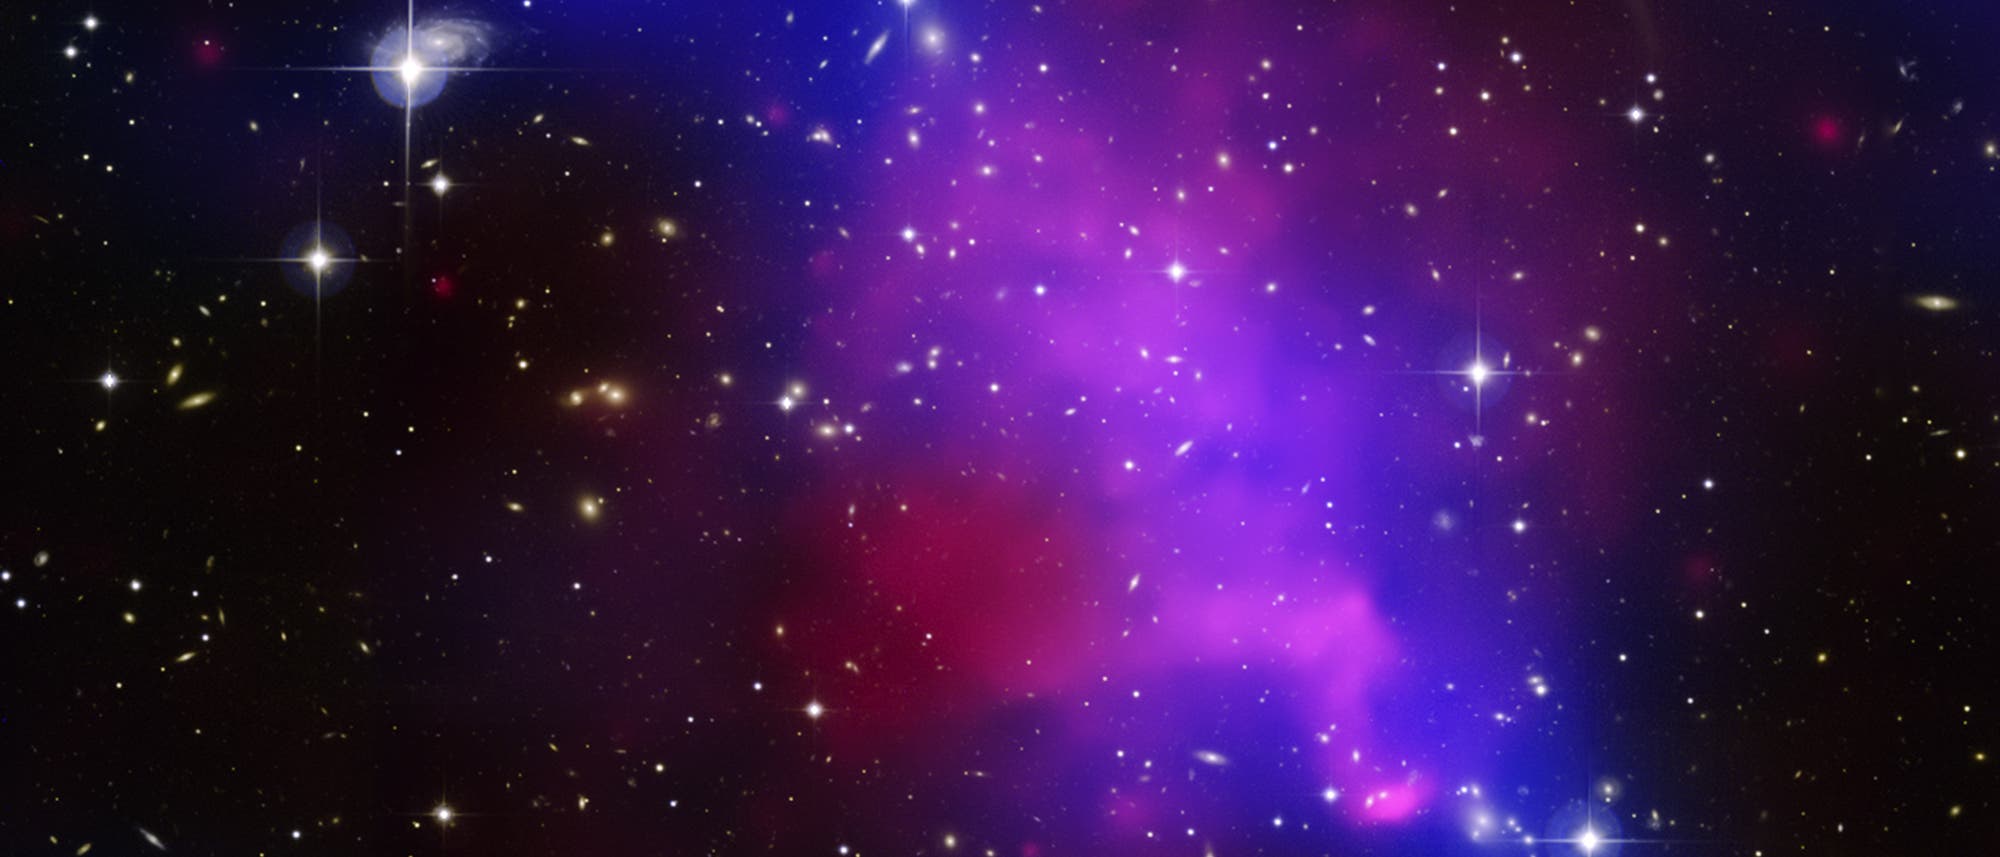 Galaxienhaufen Abell 520